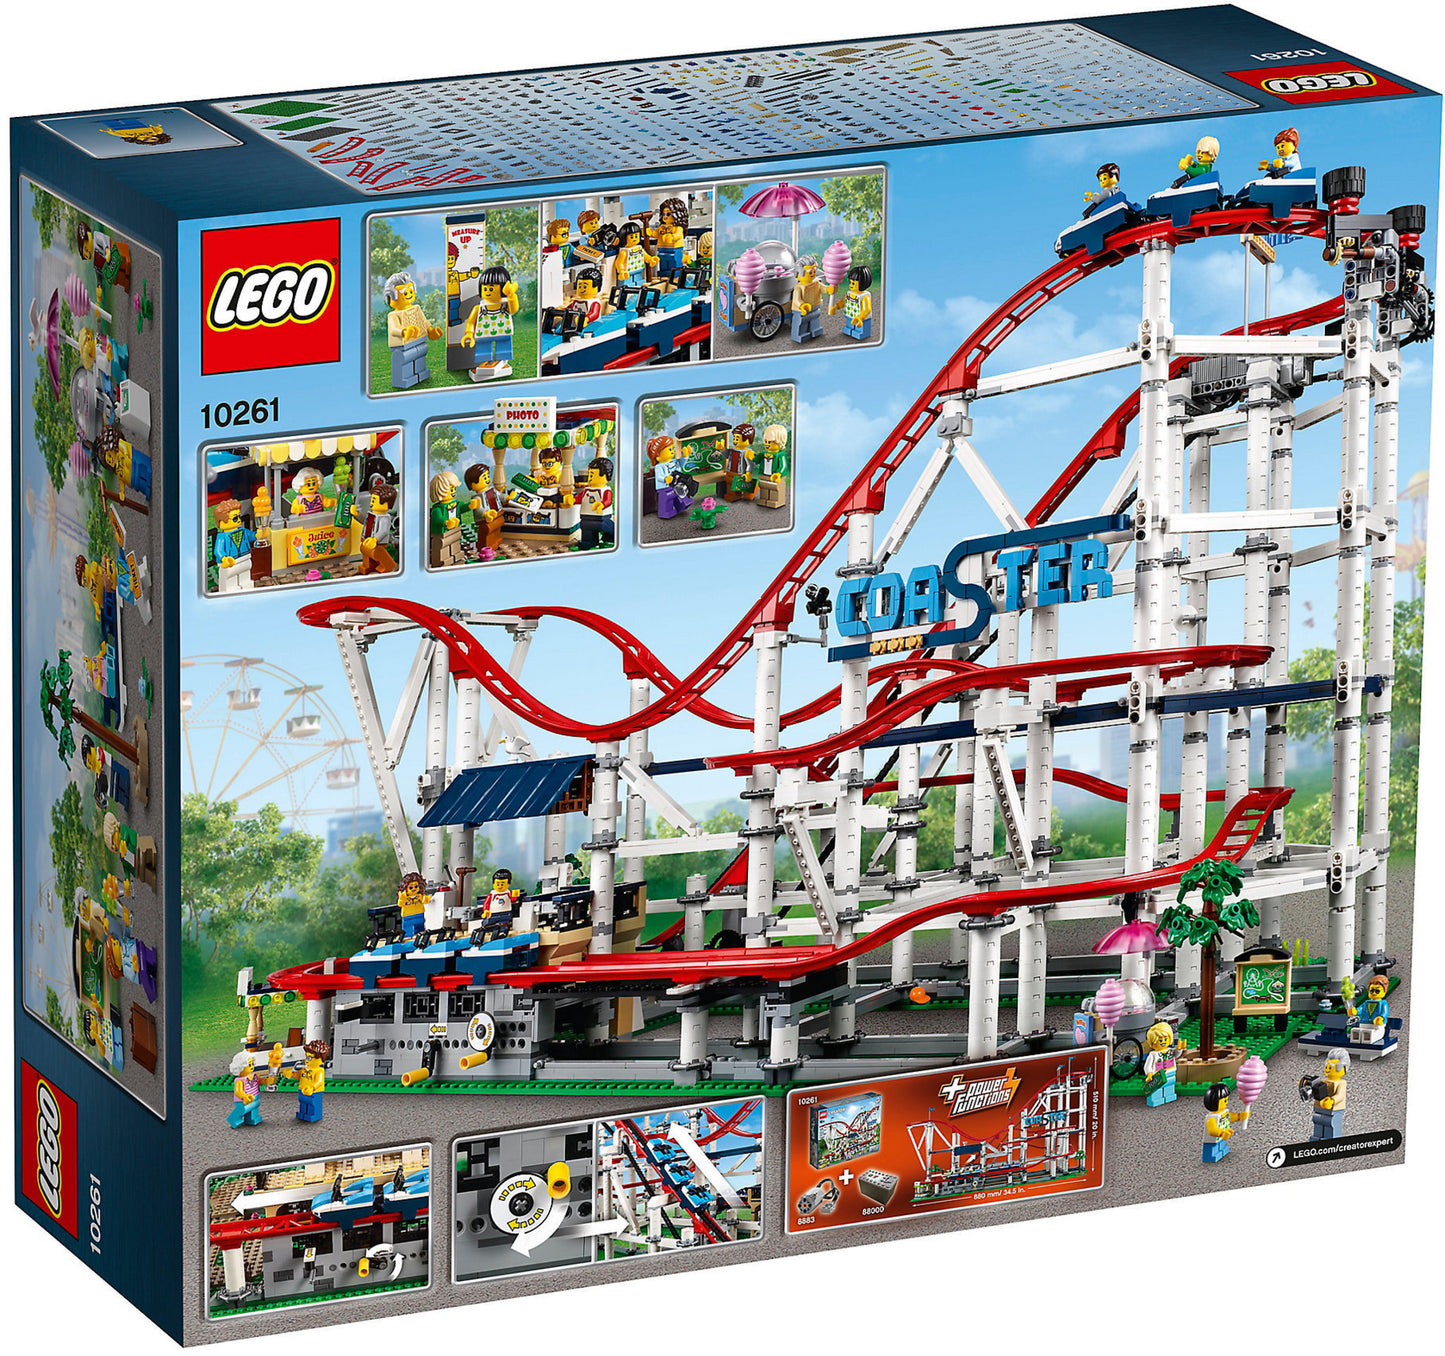 10261 LEGO Creator  - Montagne Russe